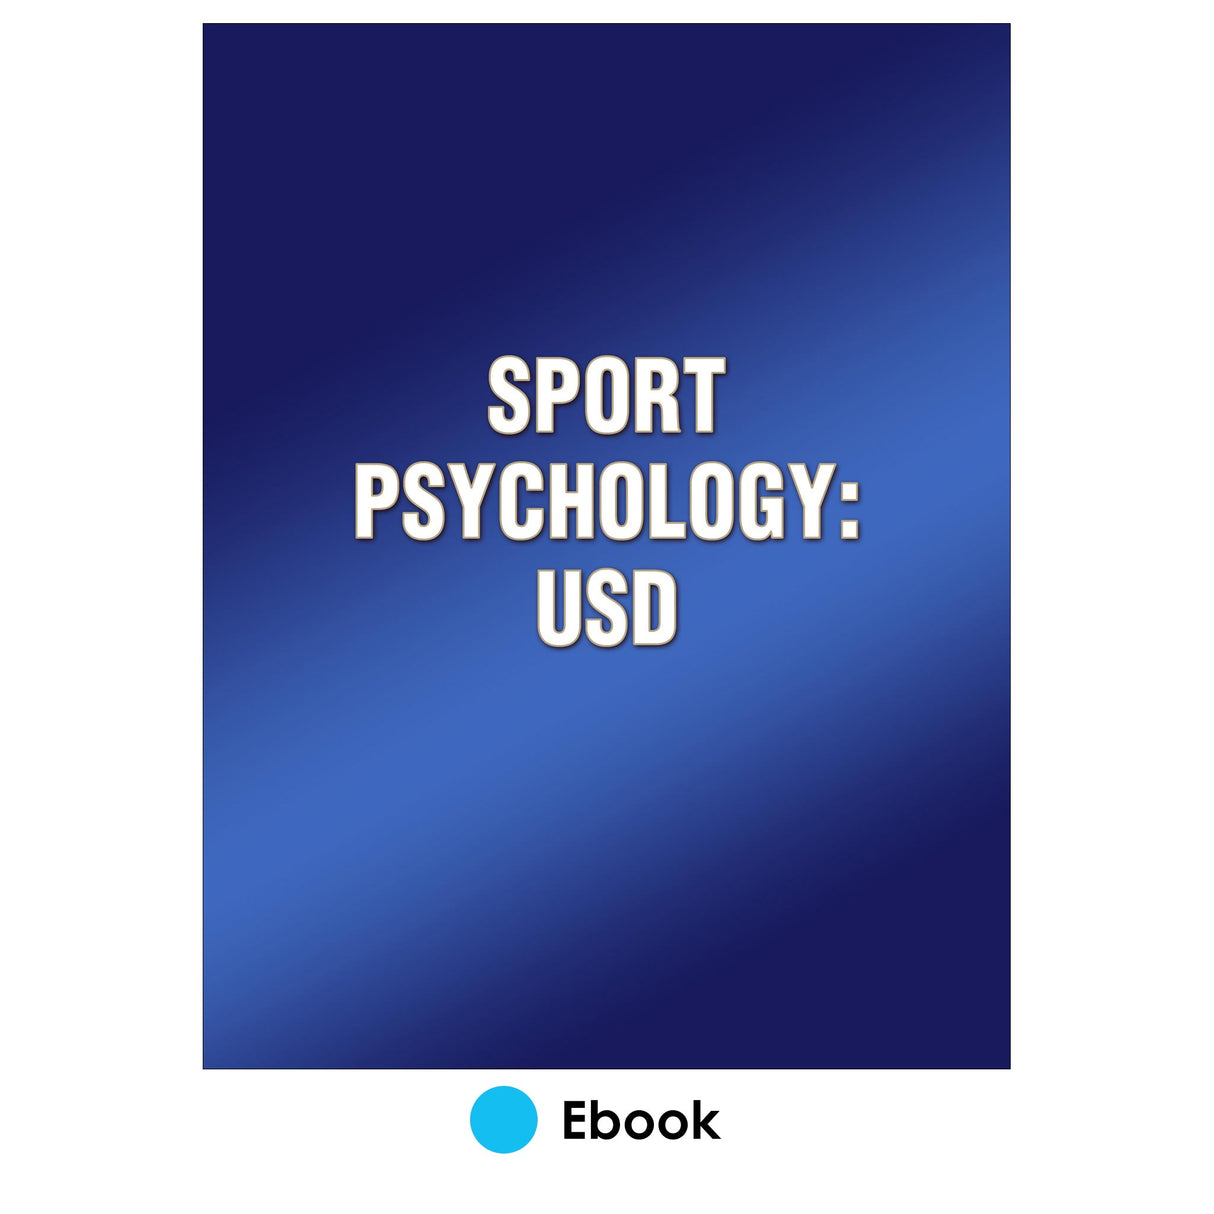 Sport Psychology: USD